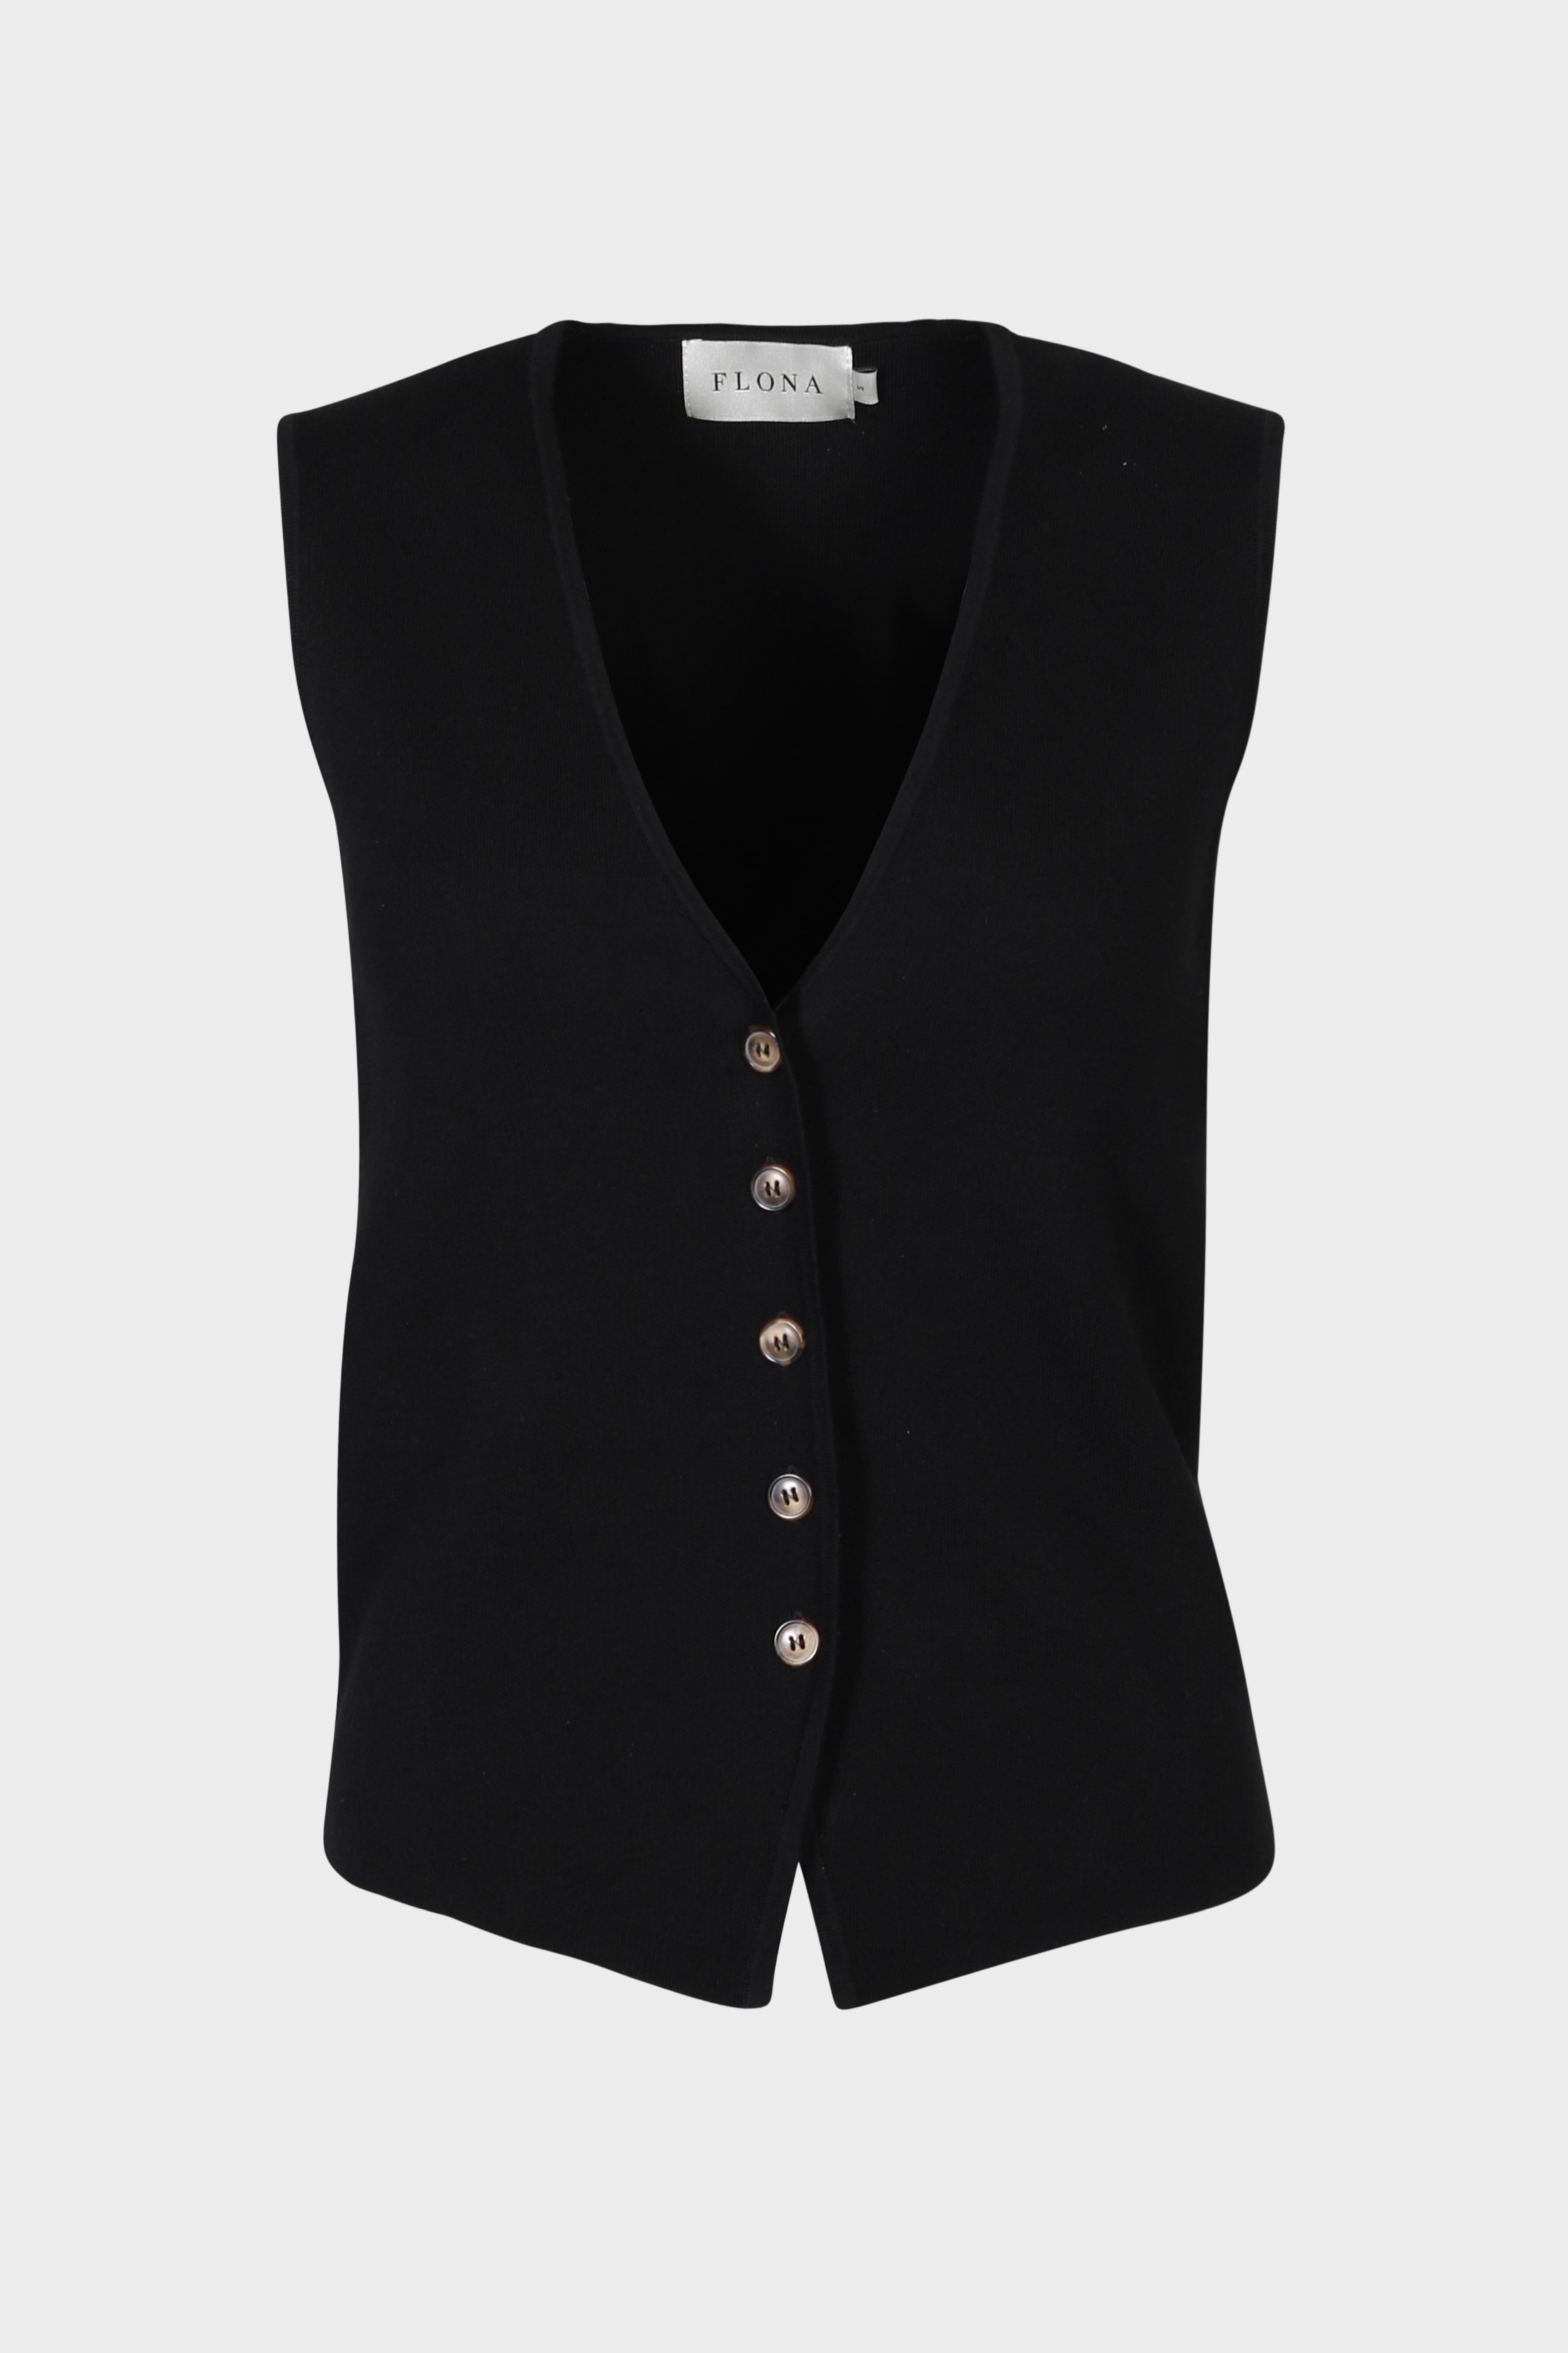 FLONA Cotton/ Cashmere Knit Vest in Black